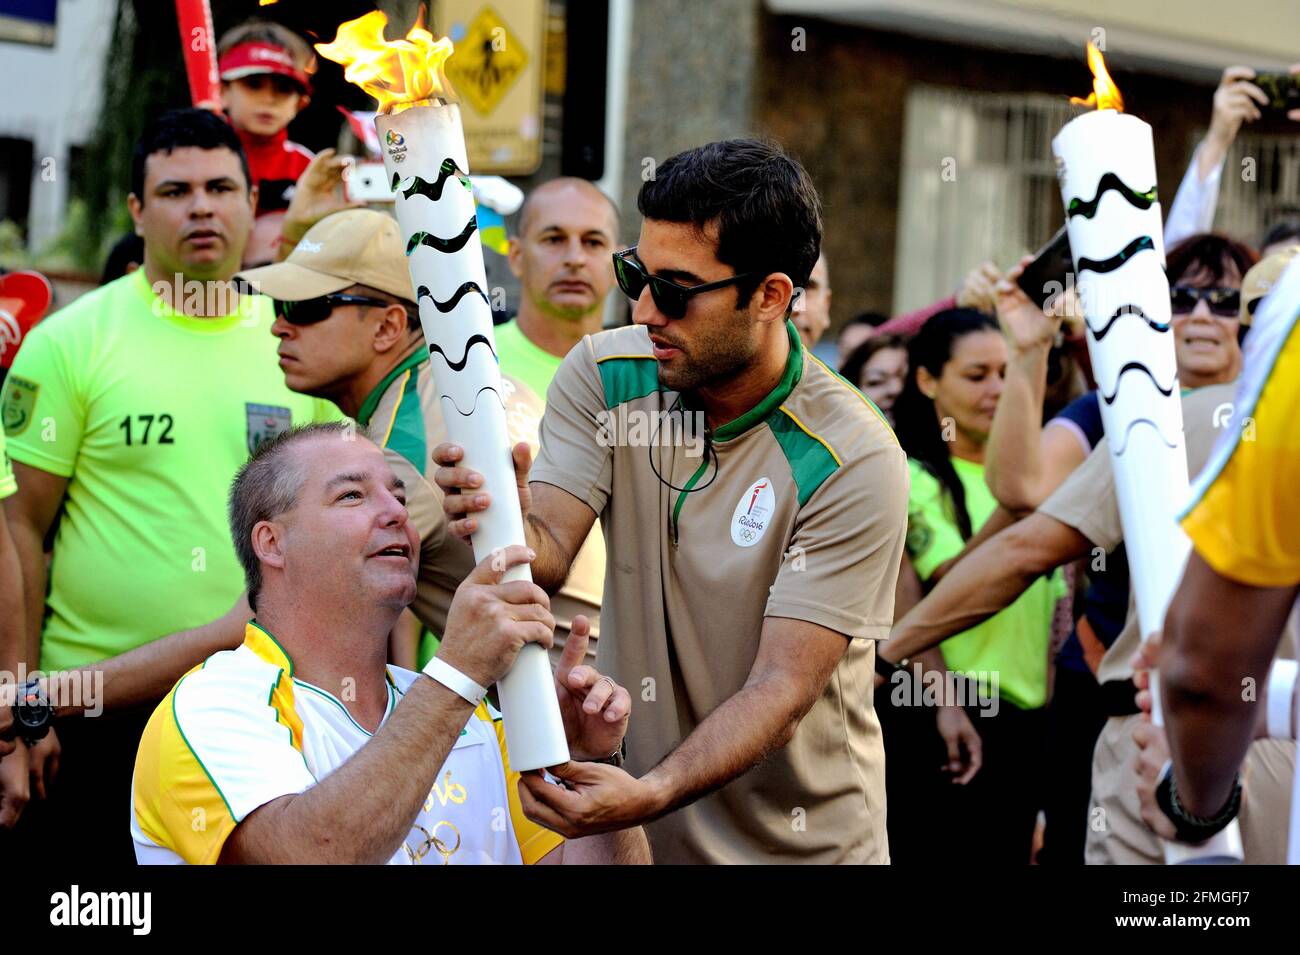 Olimpiadi, Brasile – 5 agosto 2016: Un torcicoliere durante il relè olimpico della torcia per le Olimpiadi Rio 2016 nella zona meridionale della città. Foto Stock